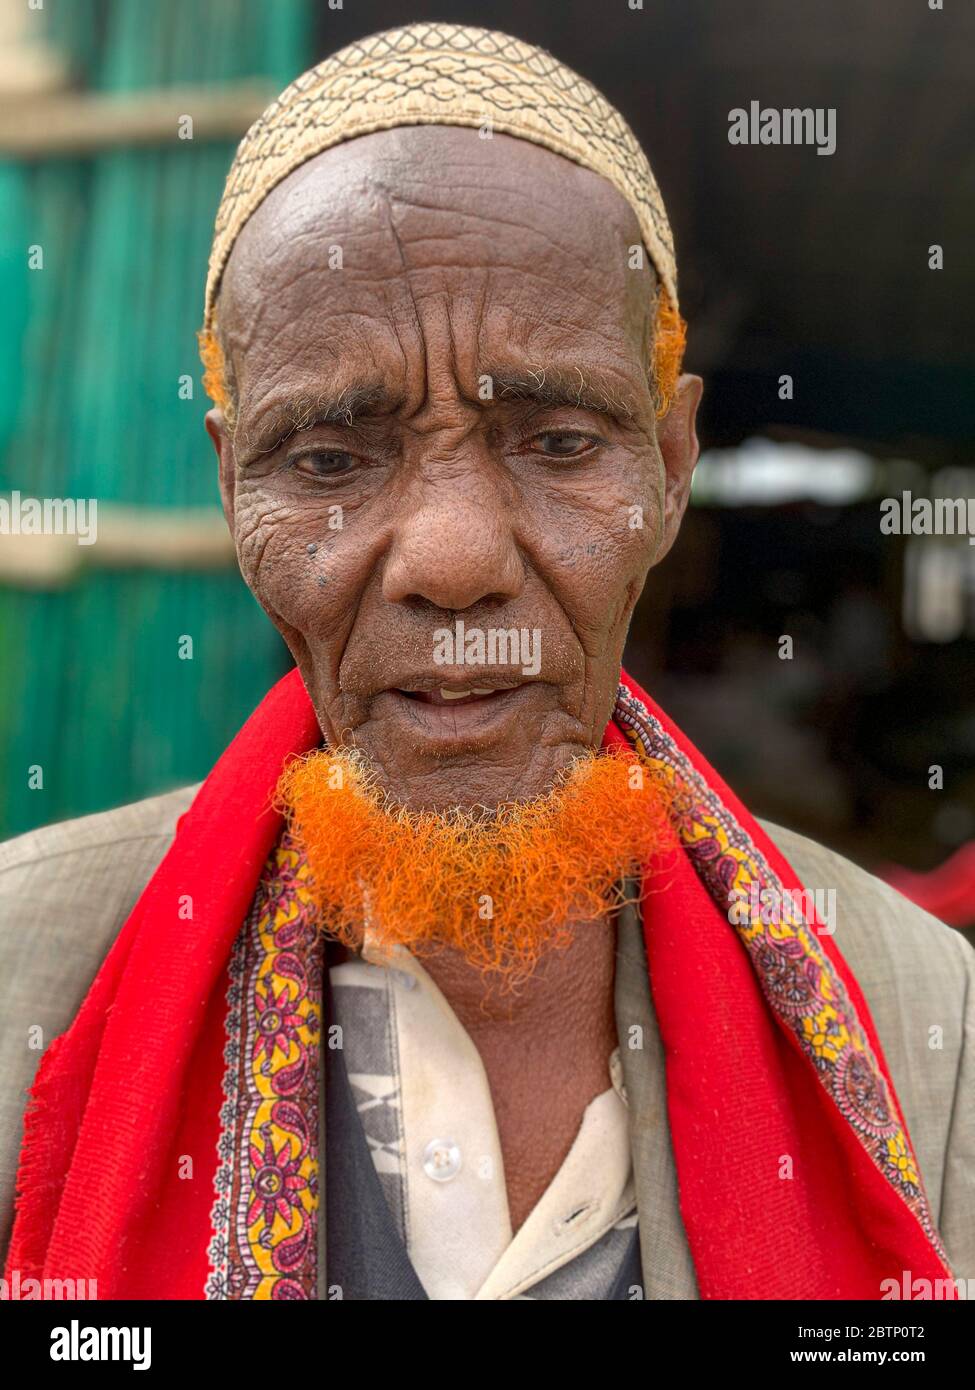 Musulman, homme âgé avec barbe, dépression de Danakil, région d'Afar, Éthiopie, Afrique Banque D'Images